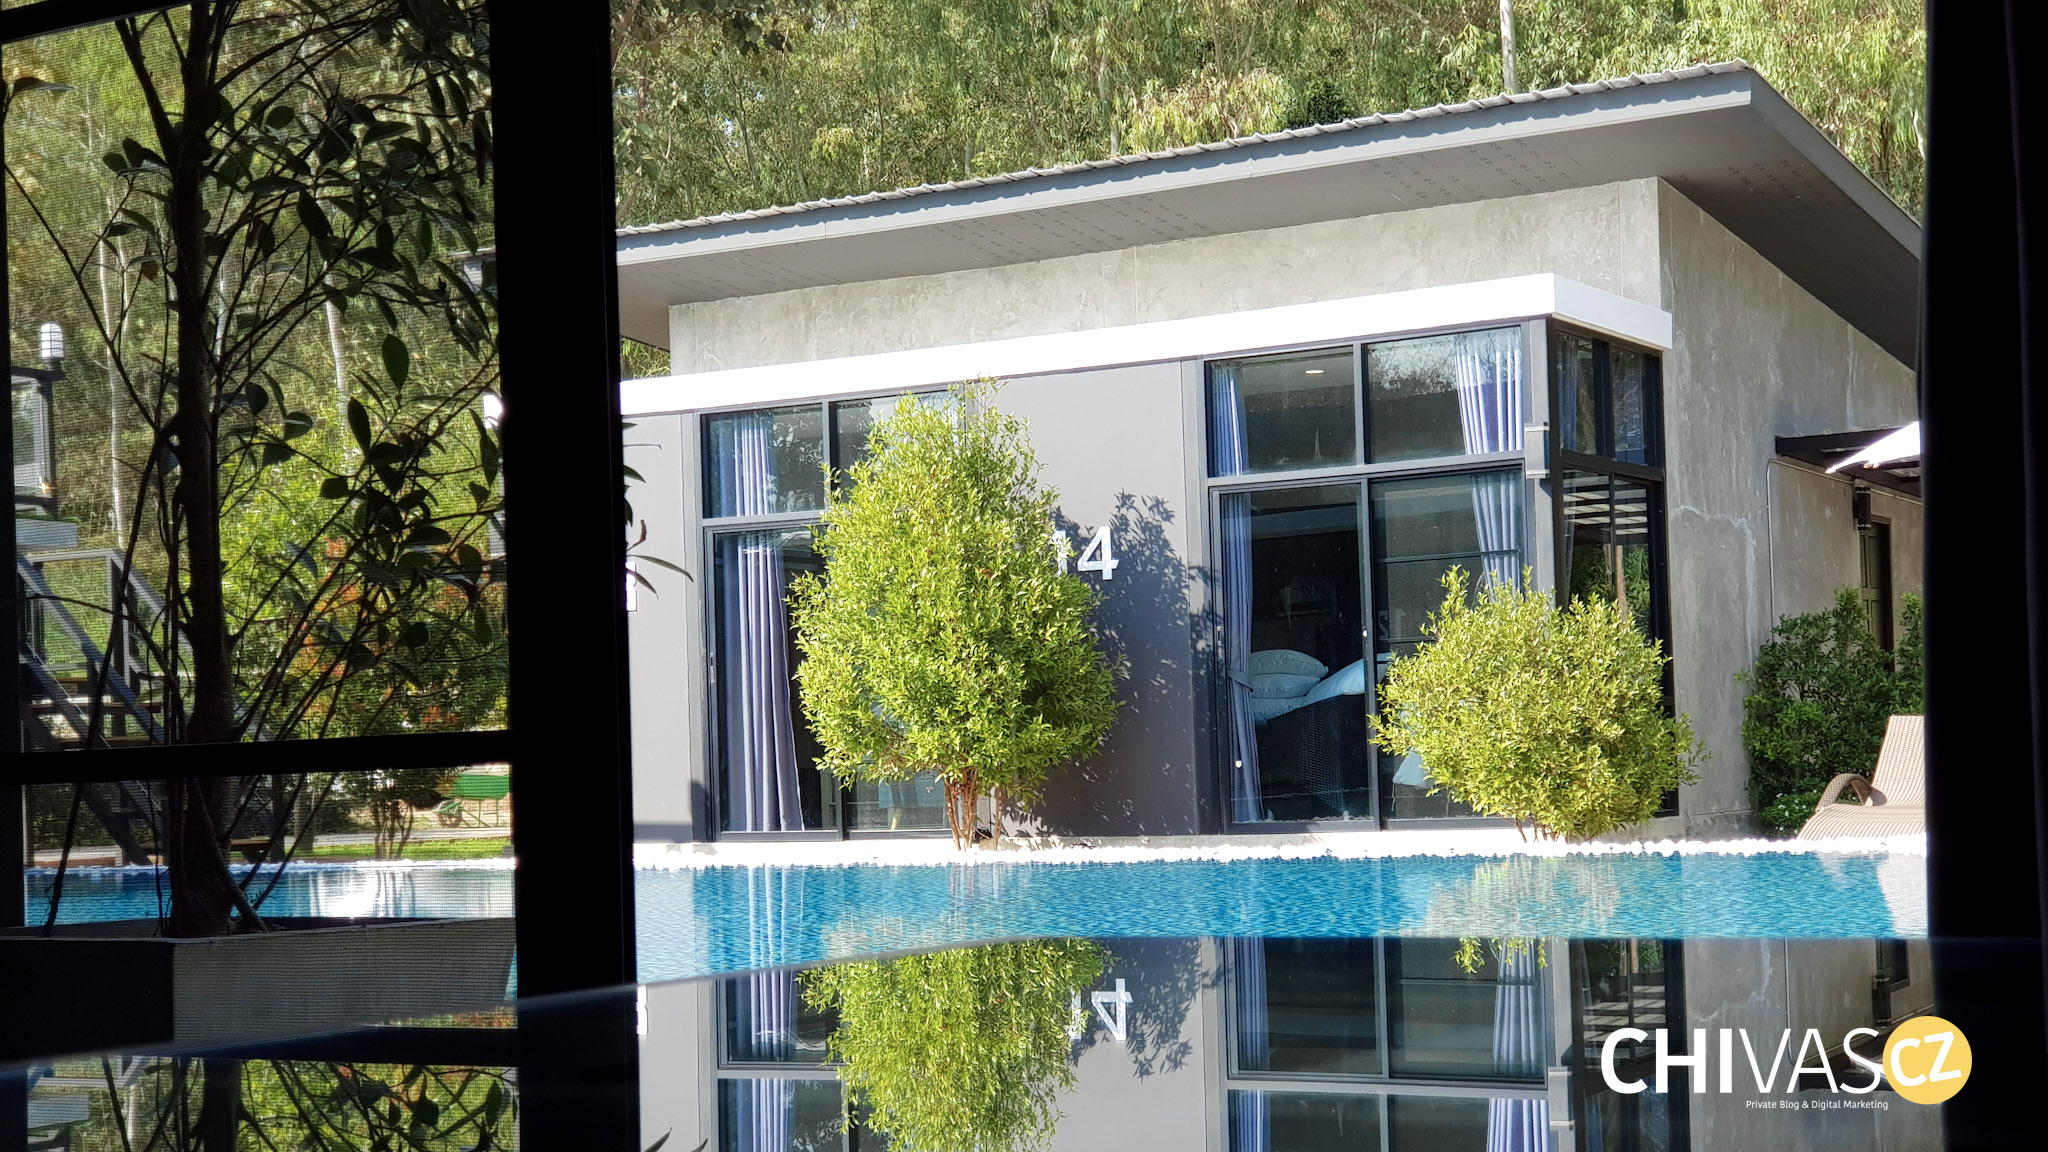 รีวิว… ลีลาวดีรีสอร์ท ที่พักน่าน กับห้องพักติดสระว่ายน้ำ บรรยากาศกลางสวนสวย